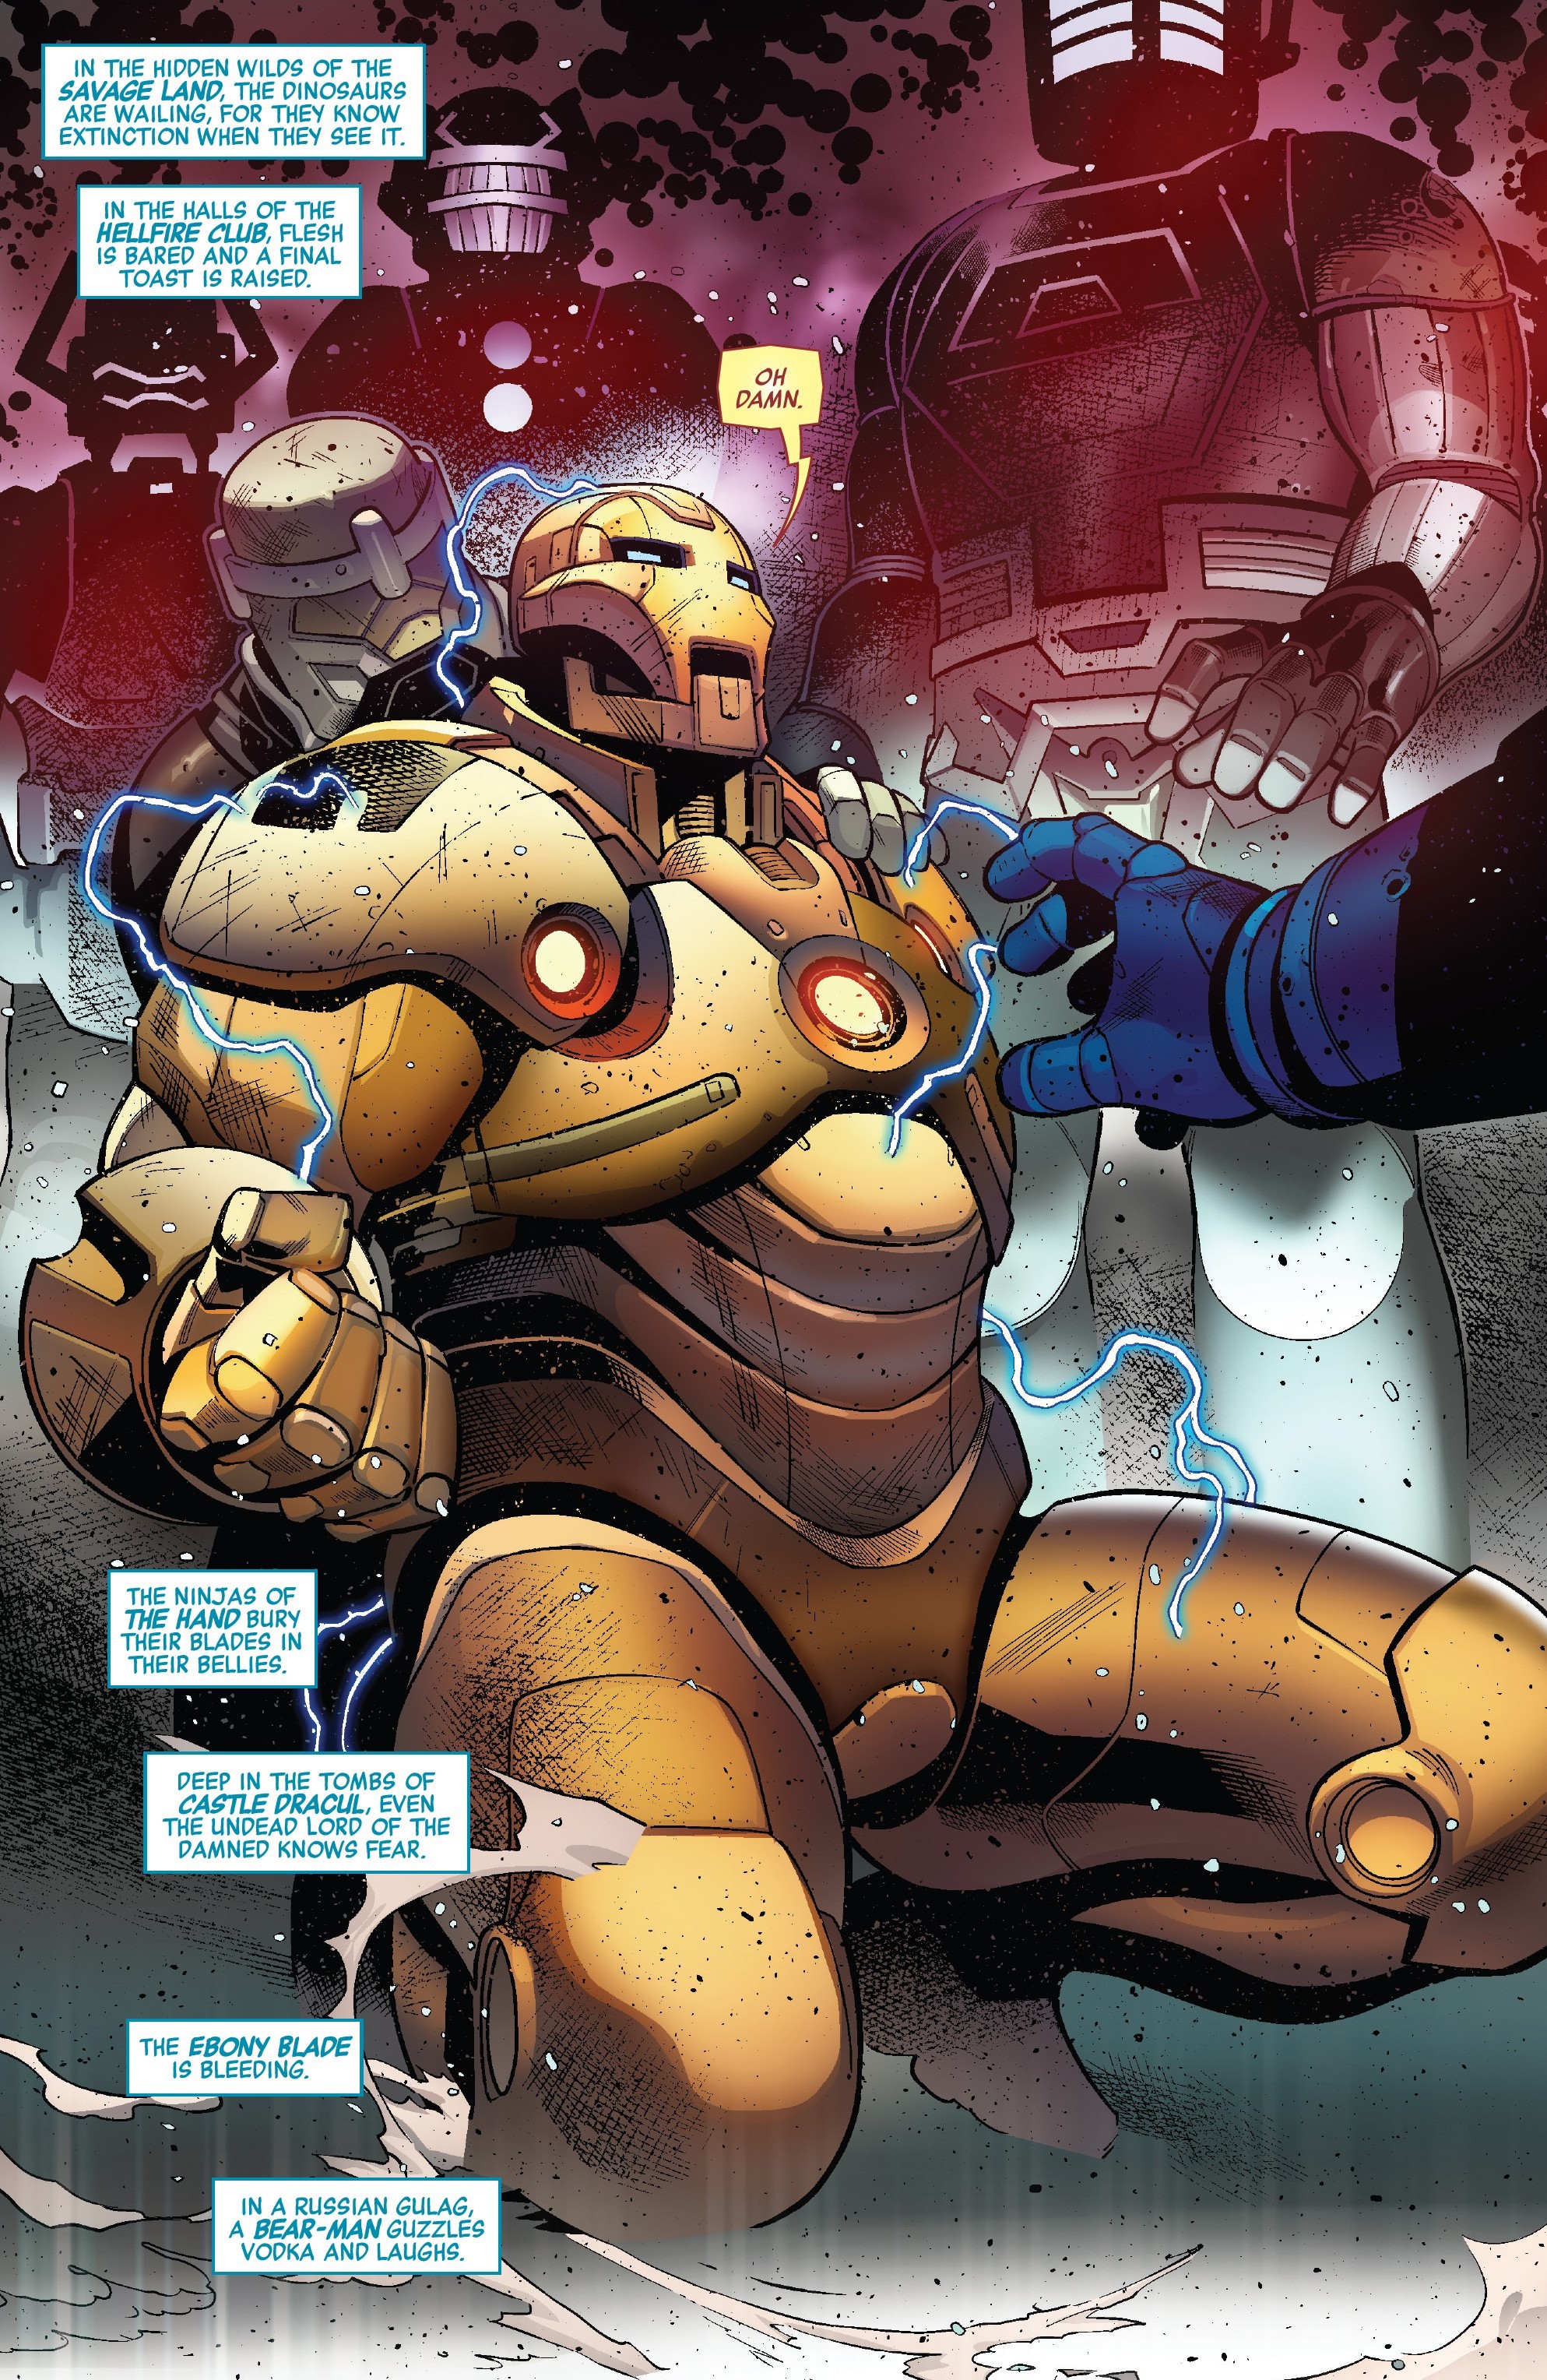 Avengers: Endgame - Găng tay vô cực của Iron Man liệu có xịn như bản chính chủ mà Thanos dùng không? - Ảnh 7.